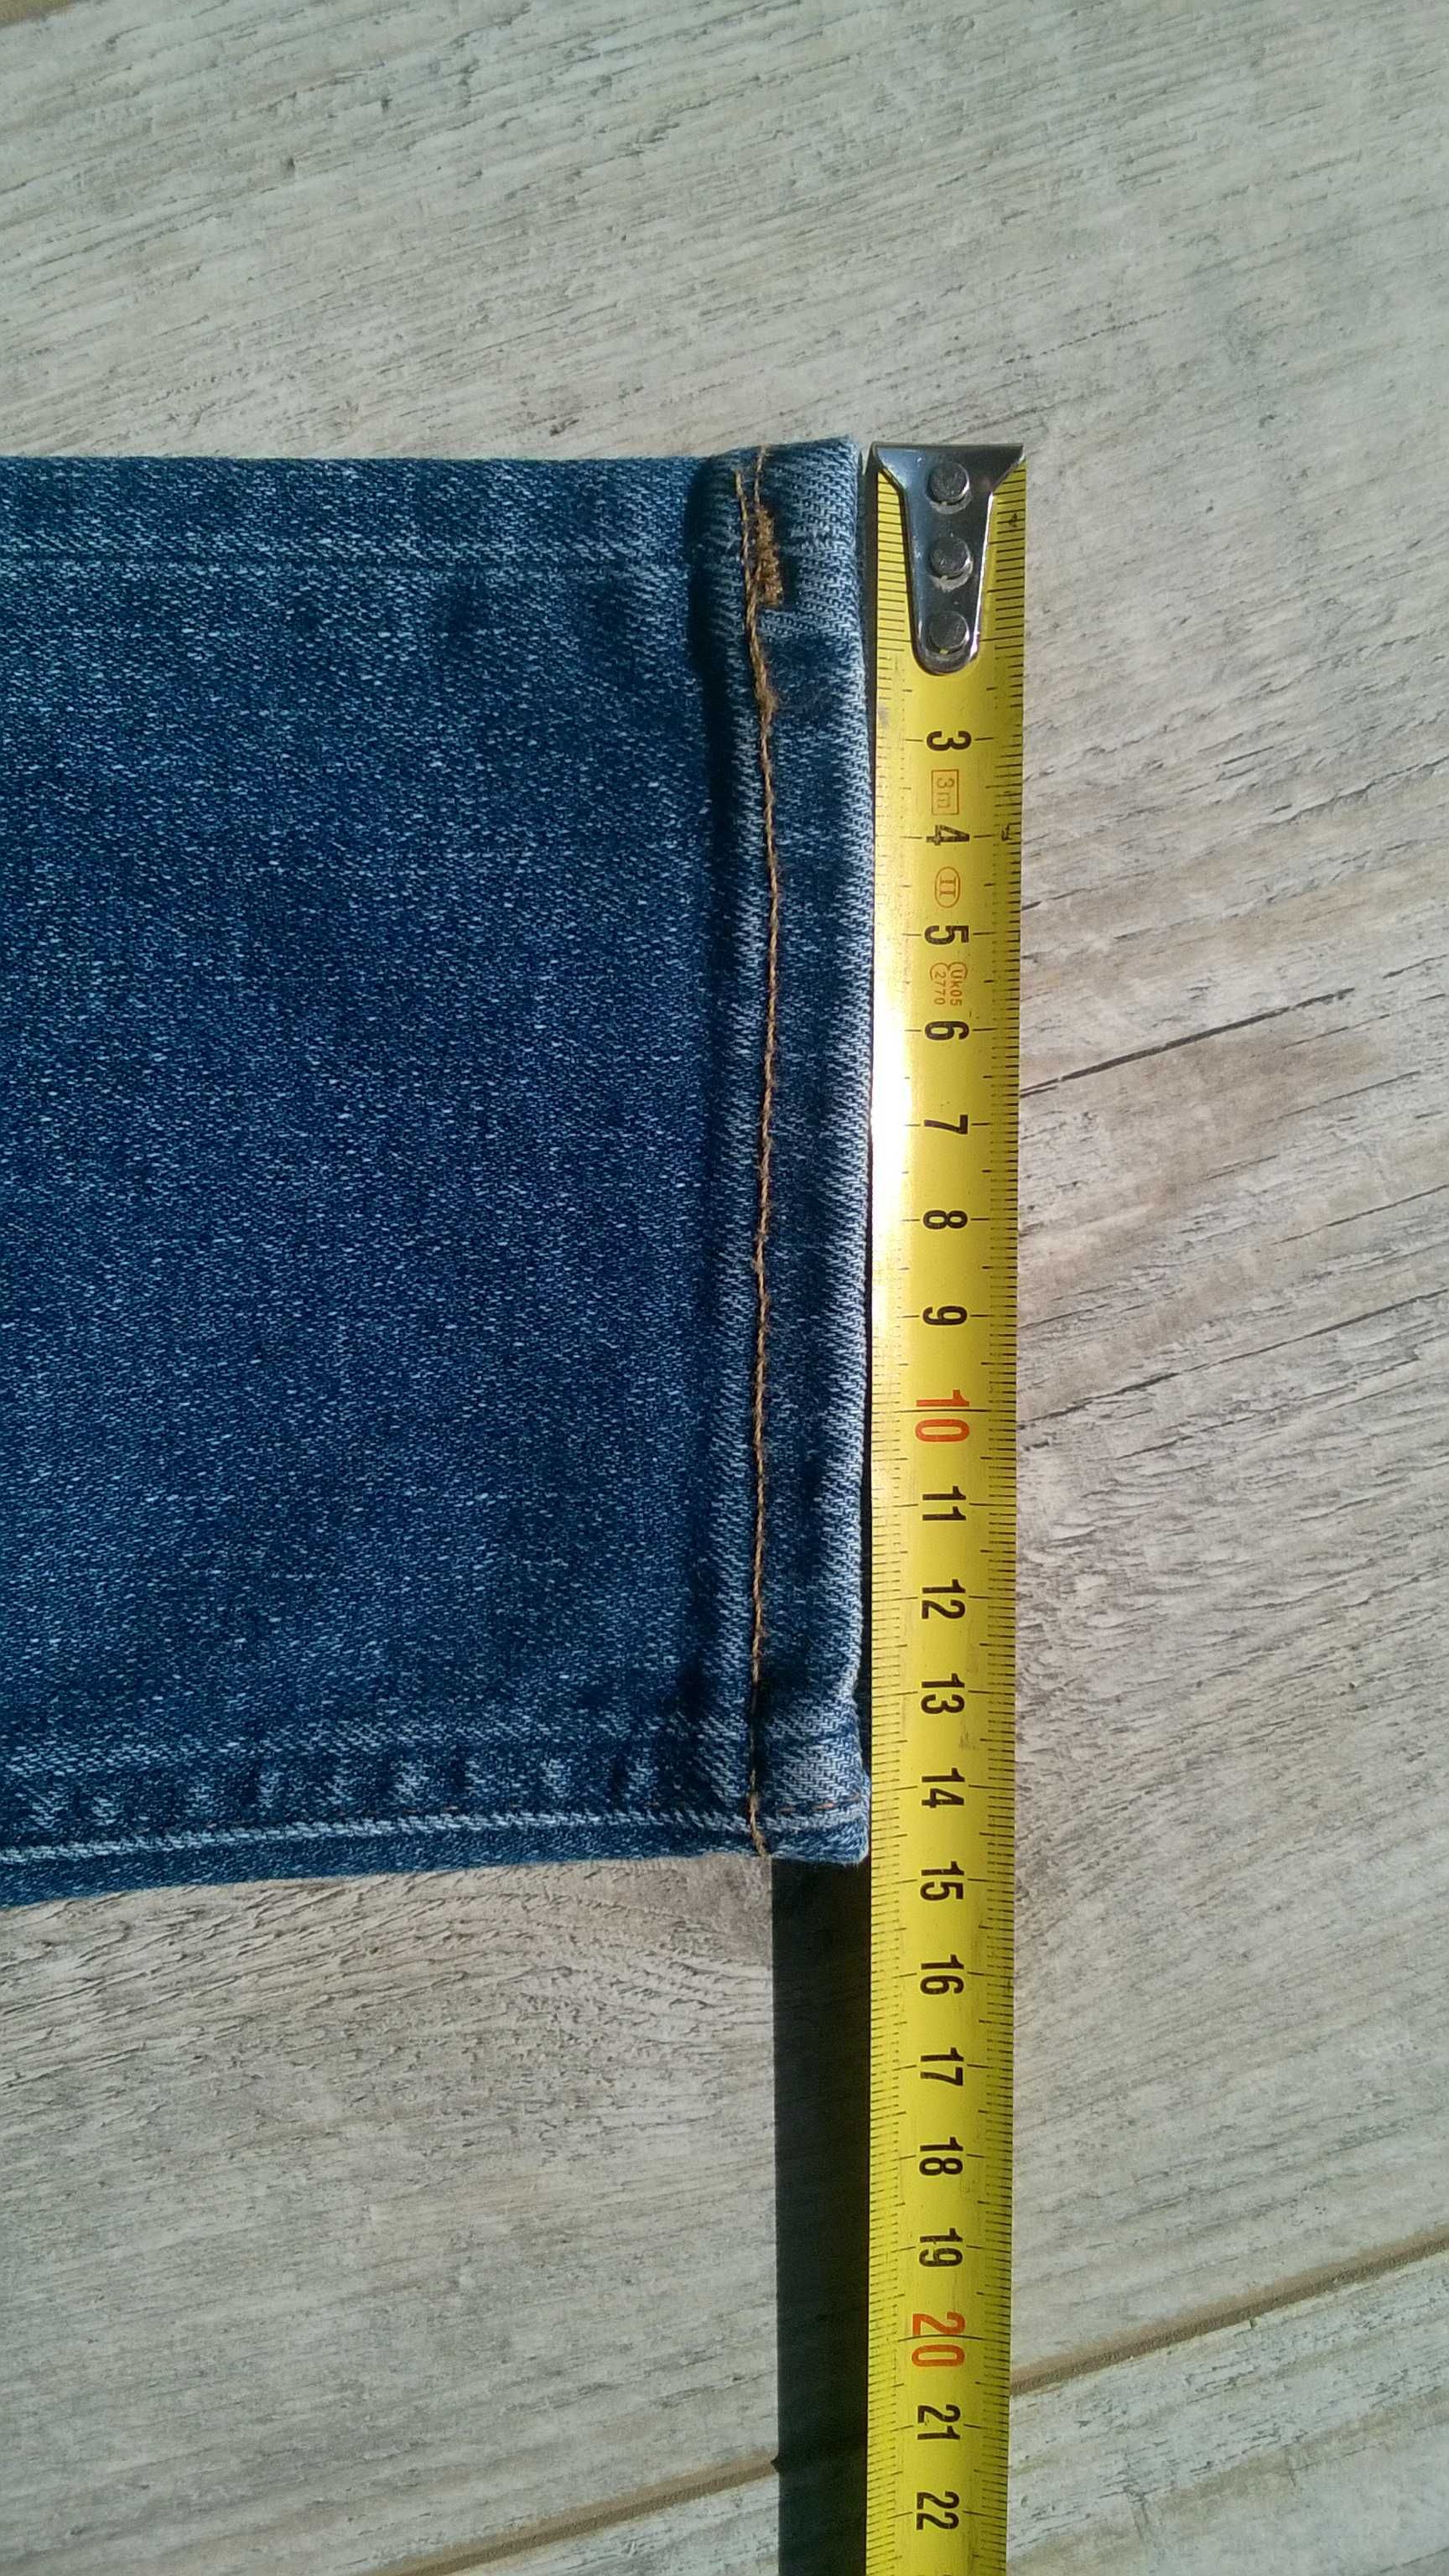 Spodnie jeans Lee  rurki 32/32 niebieskie